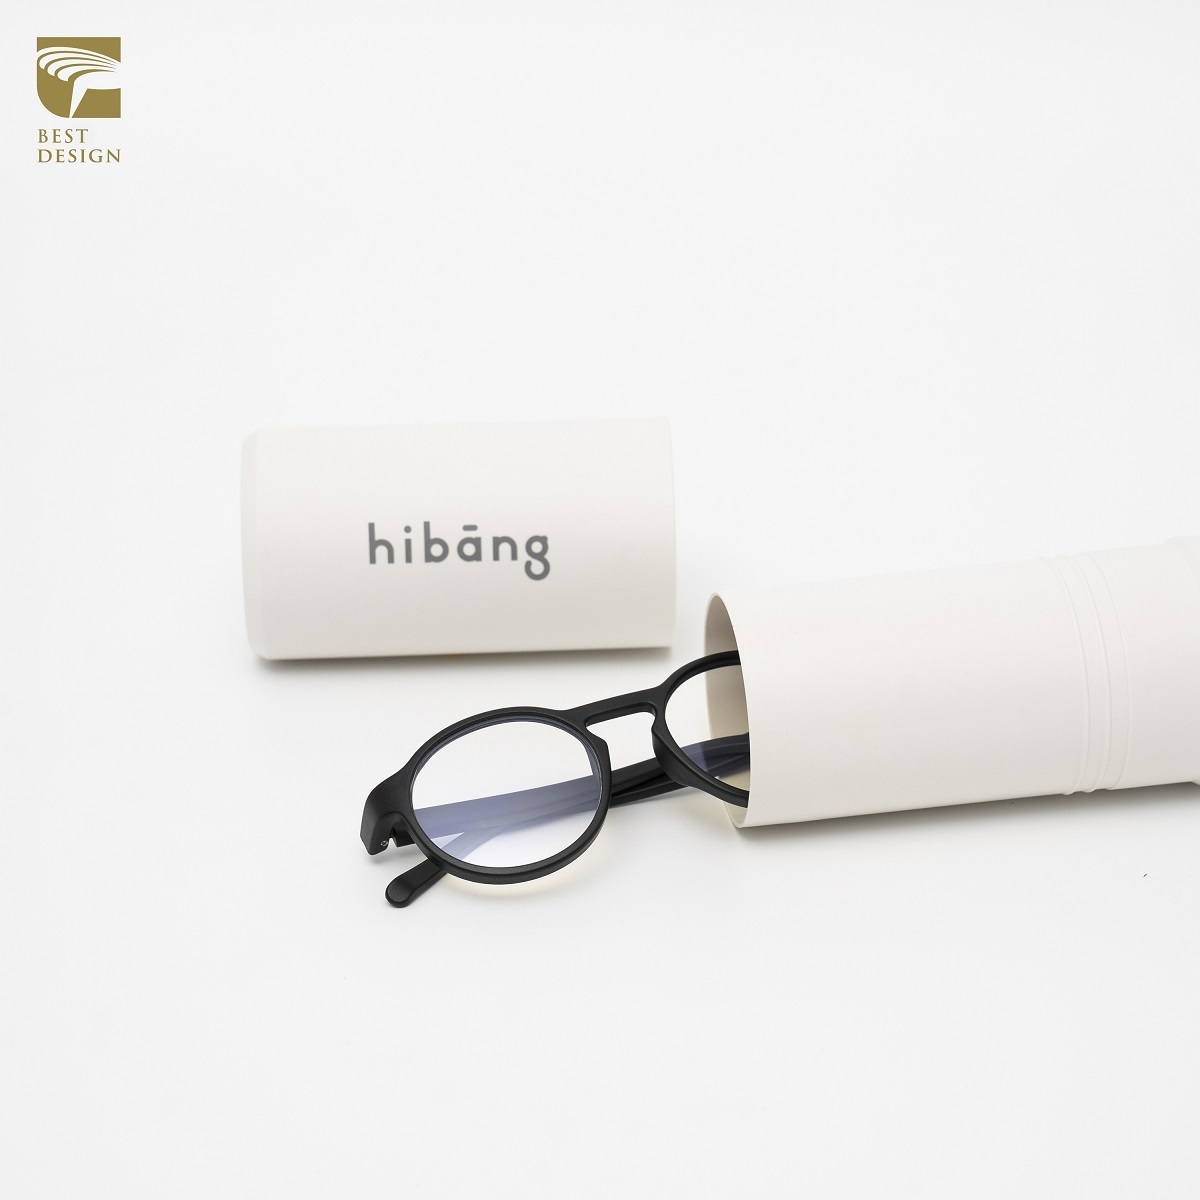 歐世勛得獎作品「Hibāng 友漁循環眼鏡」